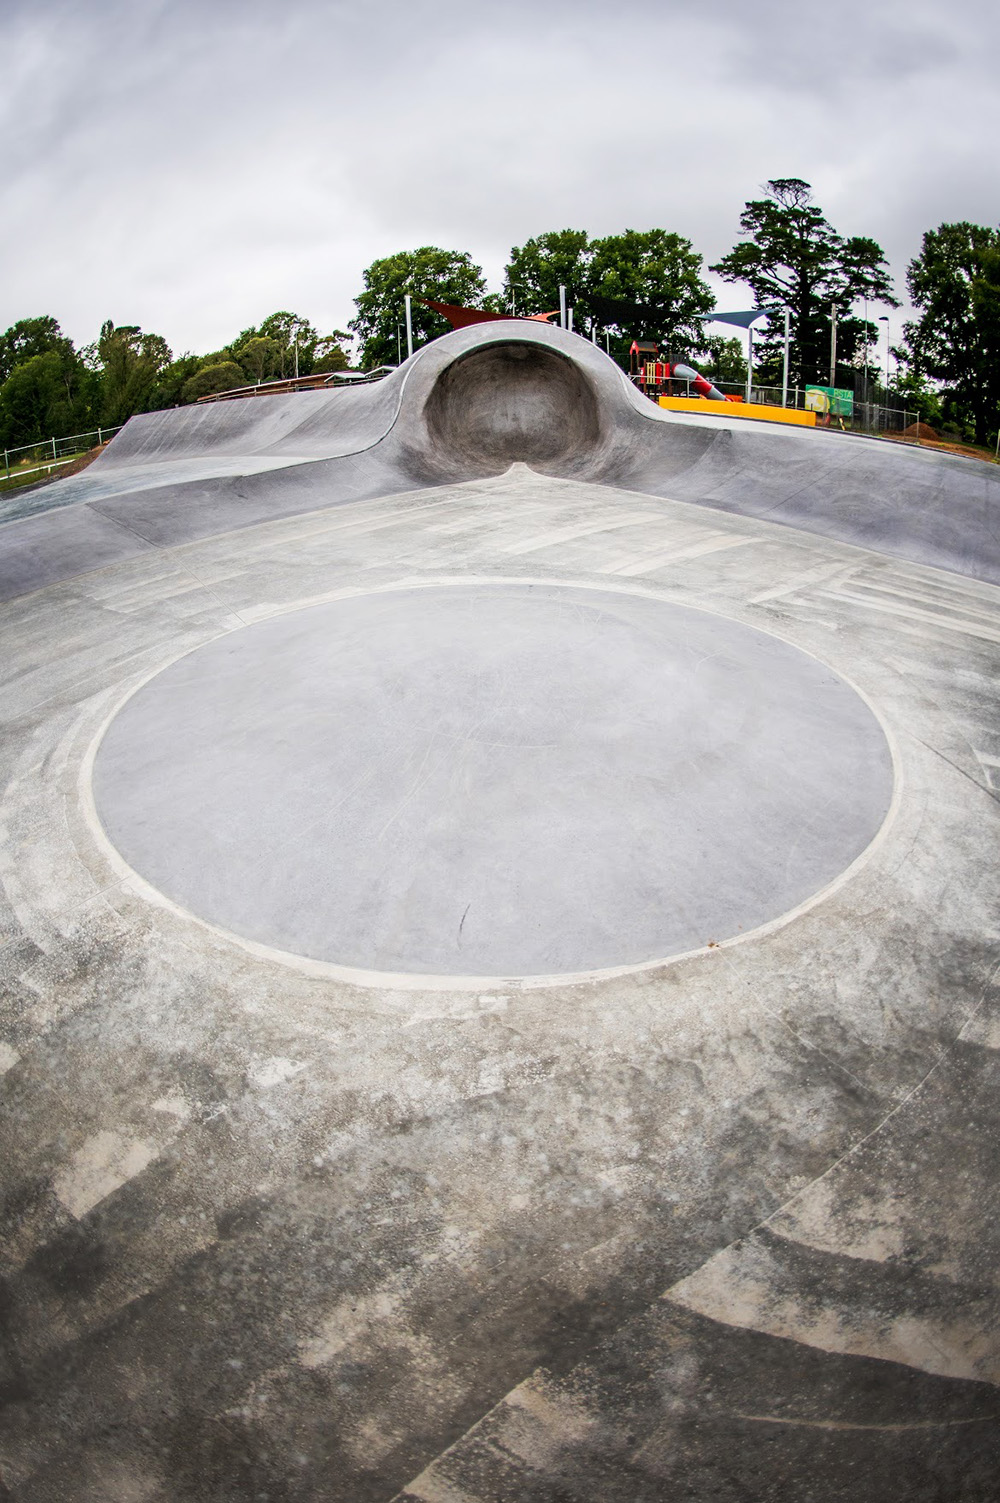 Braidwood Skatepark